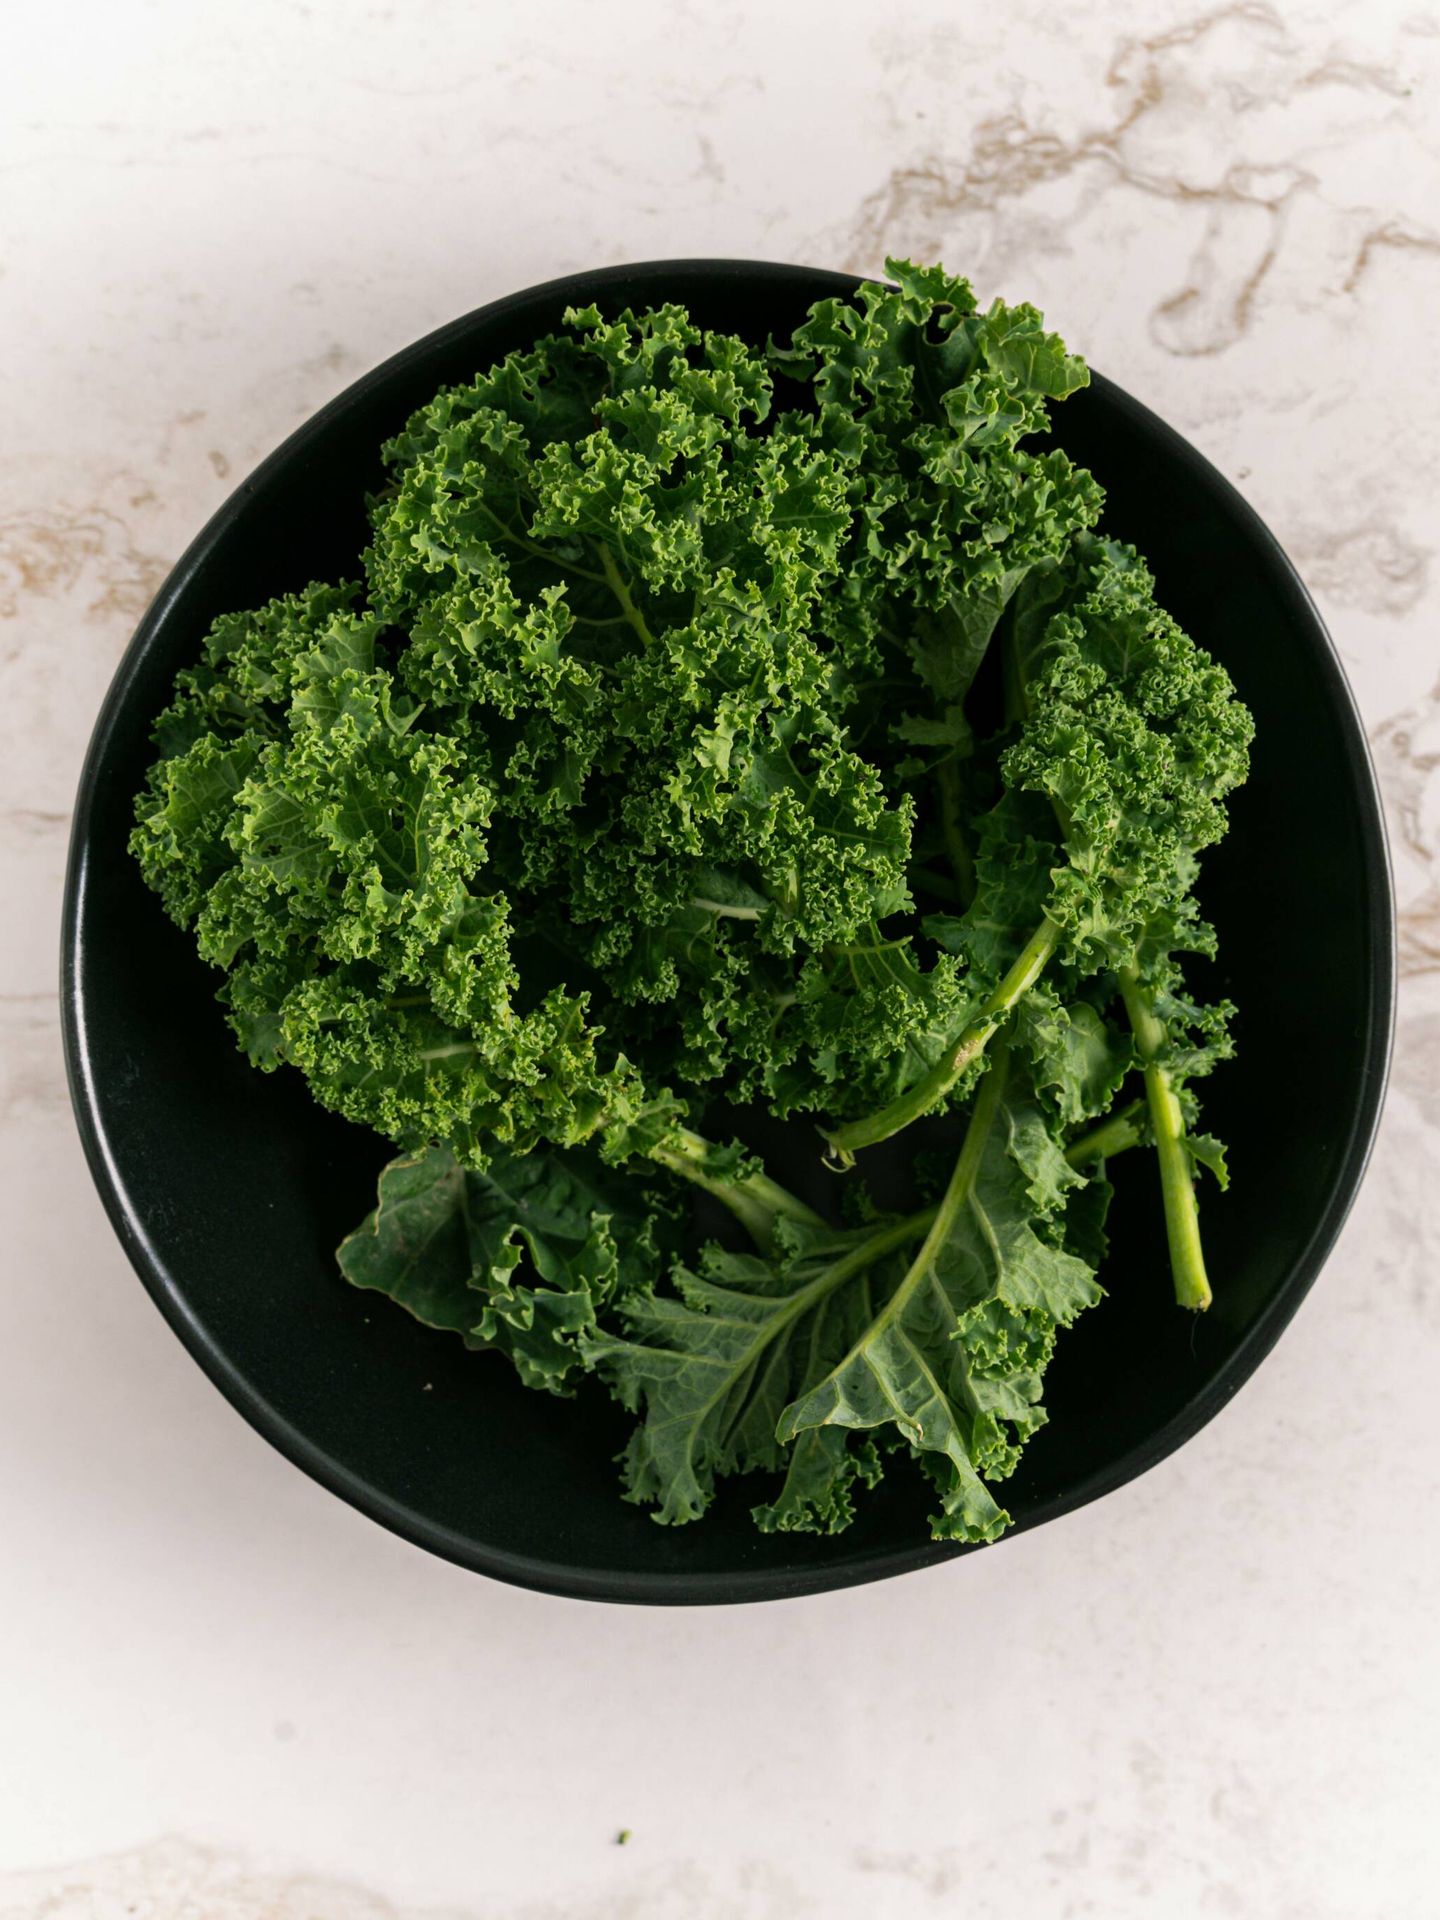 El kale podemos tomarlo cocinado o en ensaladas. (Pexels/Antoni Shkraba)